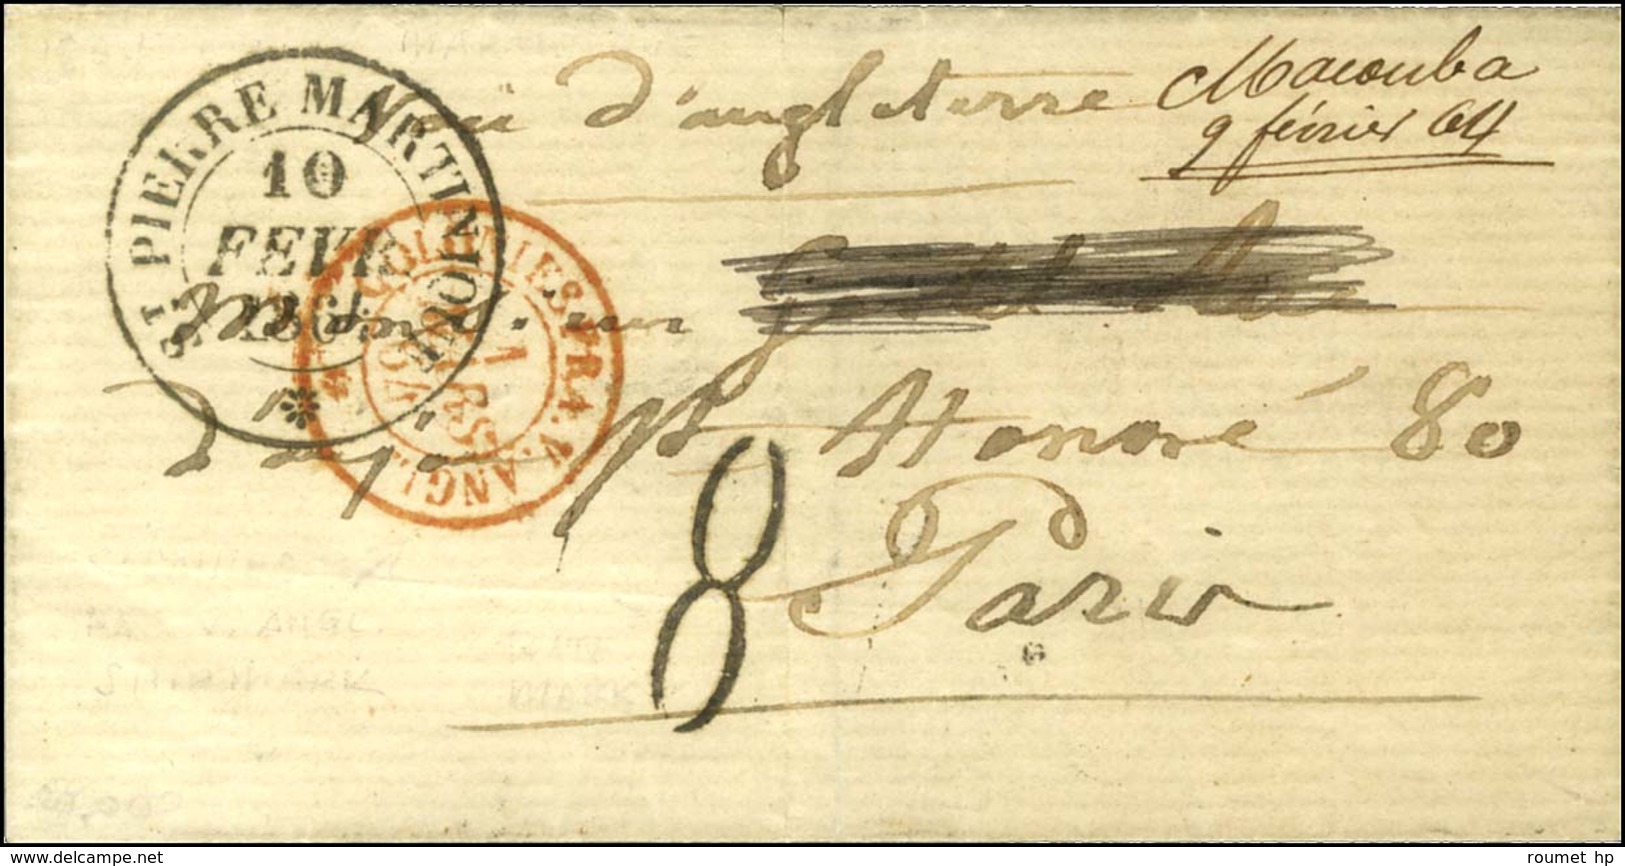 Lettre Datée De Macouba Le 8 Février 1864 Adressée à Paris. Au Recto, Mention Manuscrite '' Macouba 9 Février 64 '', Càd - Maritime Post